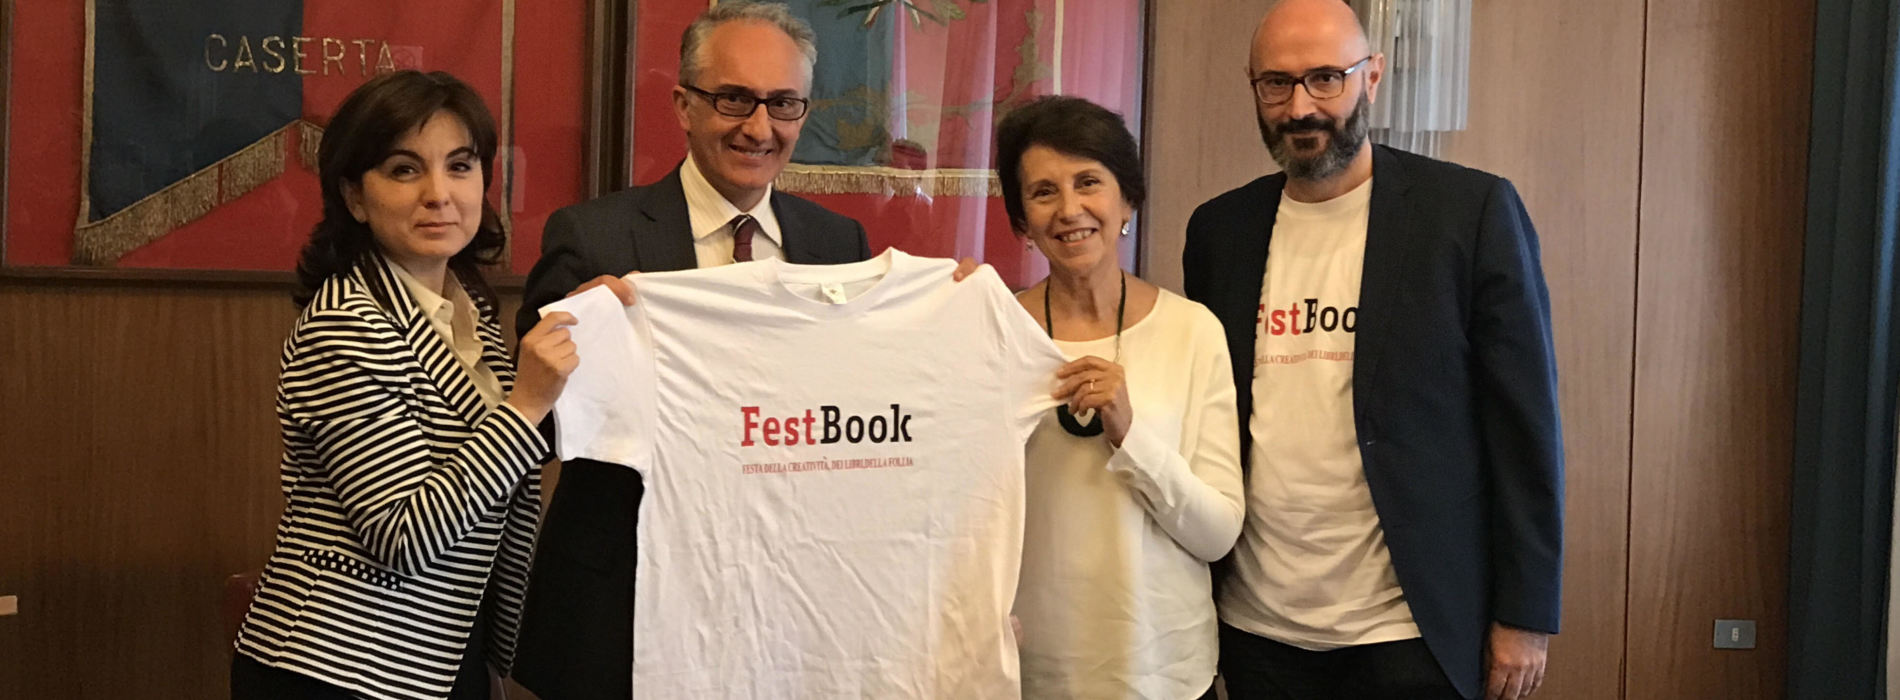 FestBook, libri e follia per un festival della creatività